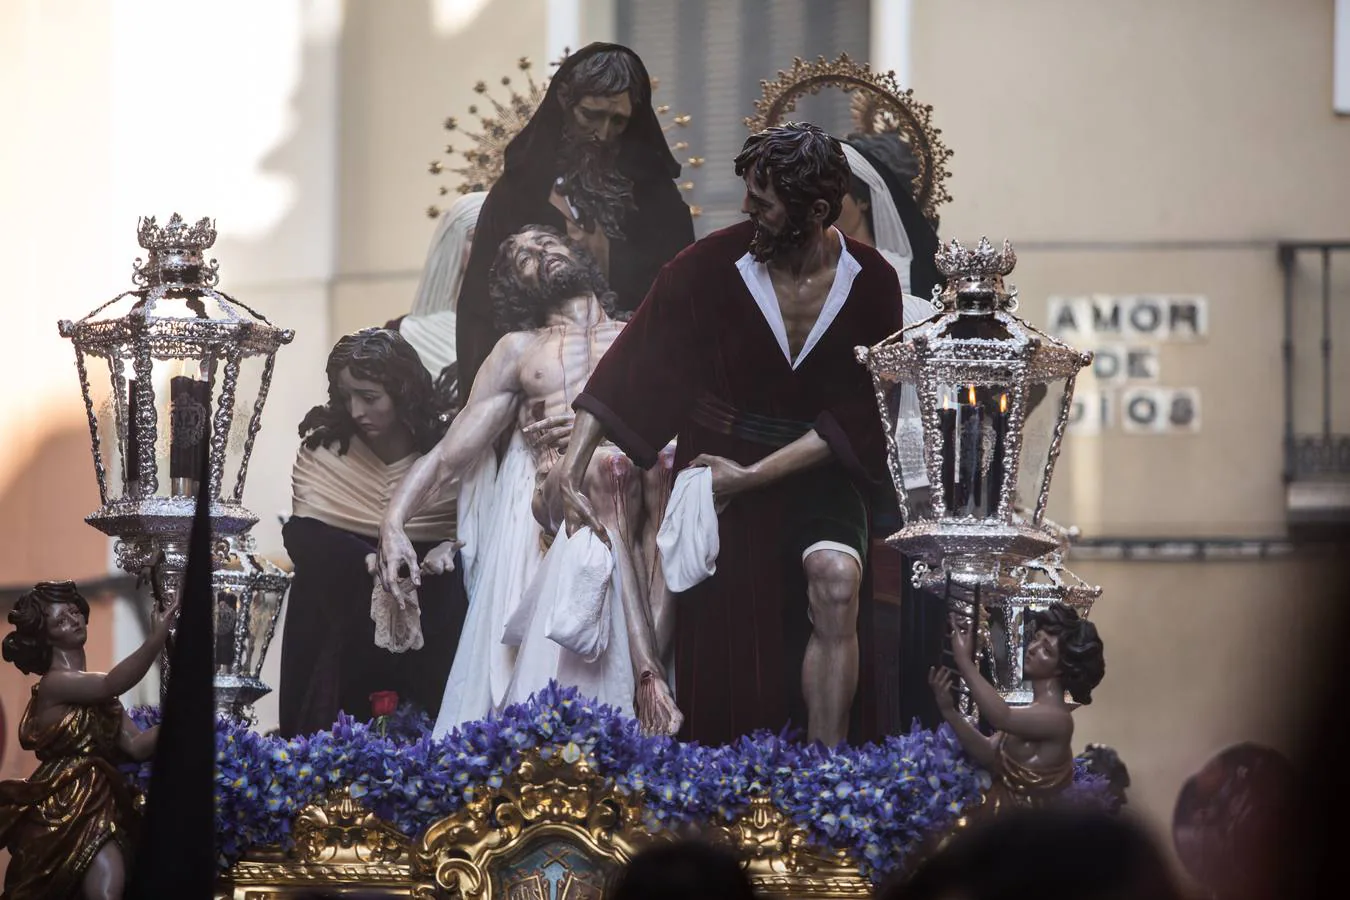 En fotos, salida de la Parroquia de San Andrés de la Hermandad de Santa Marta - Semana Santa de Sevilla 2018